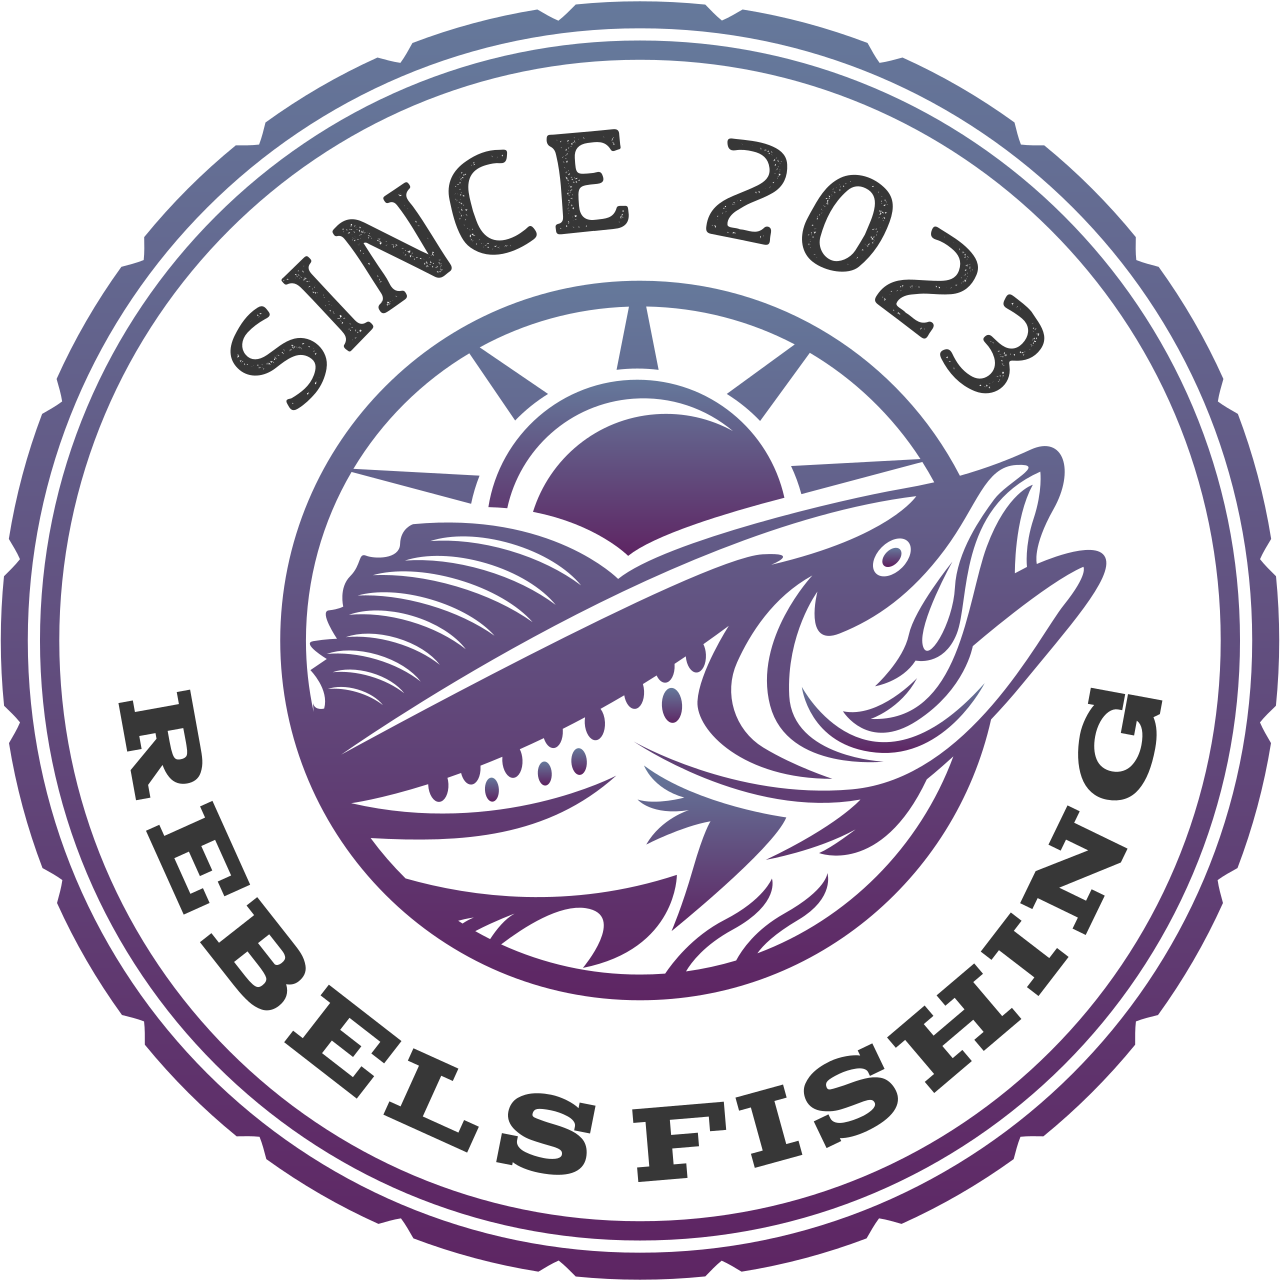 rebels fishing's logo